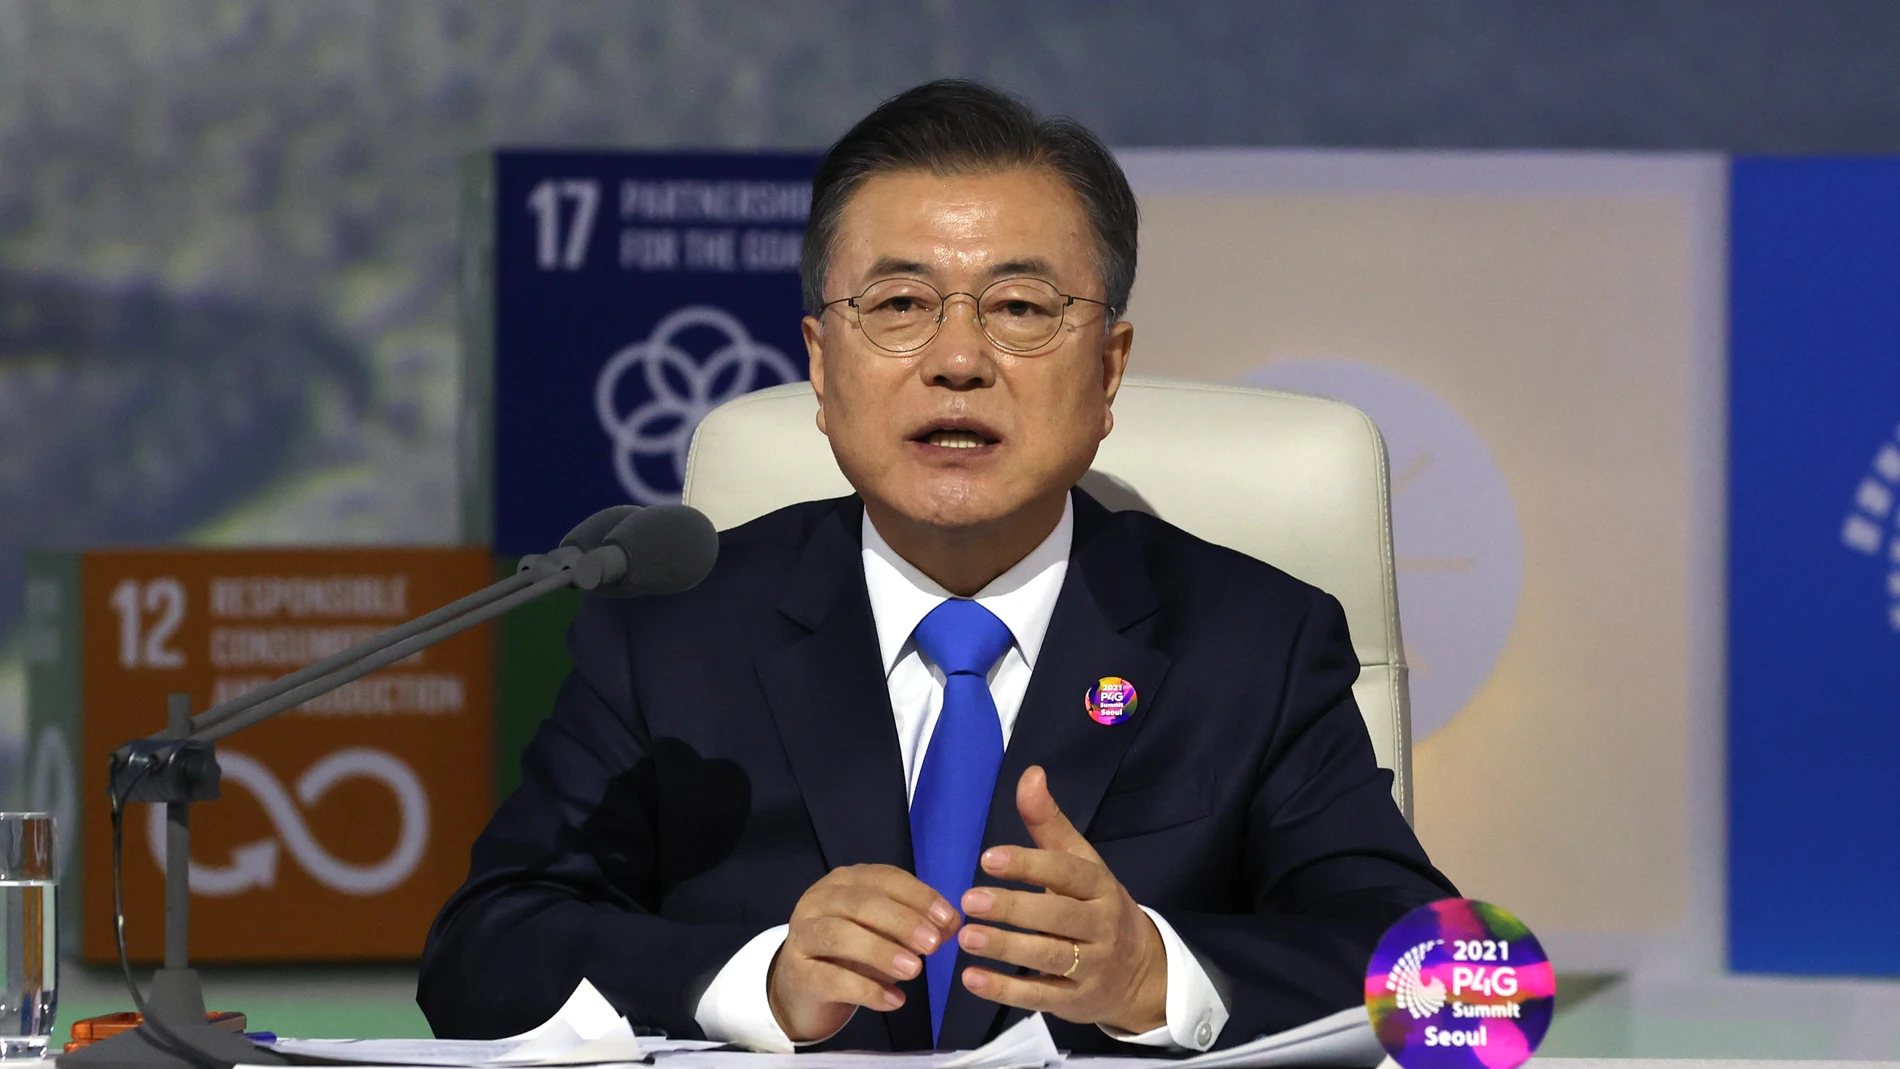 El presidente de Corea del Sur Moon Jae-in